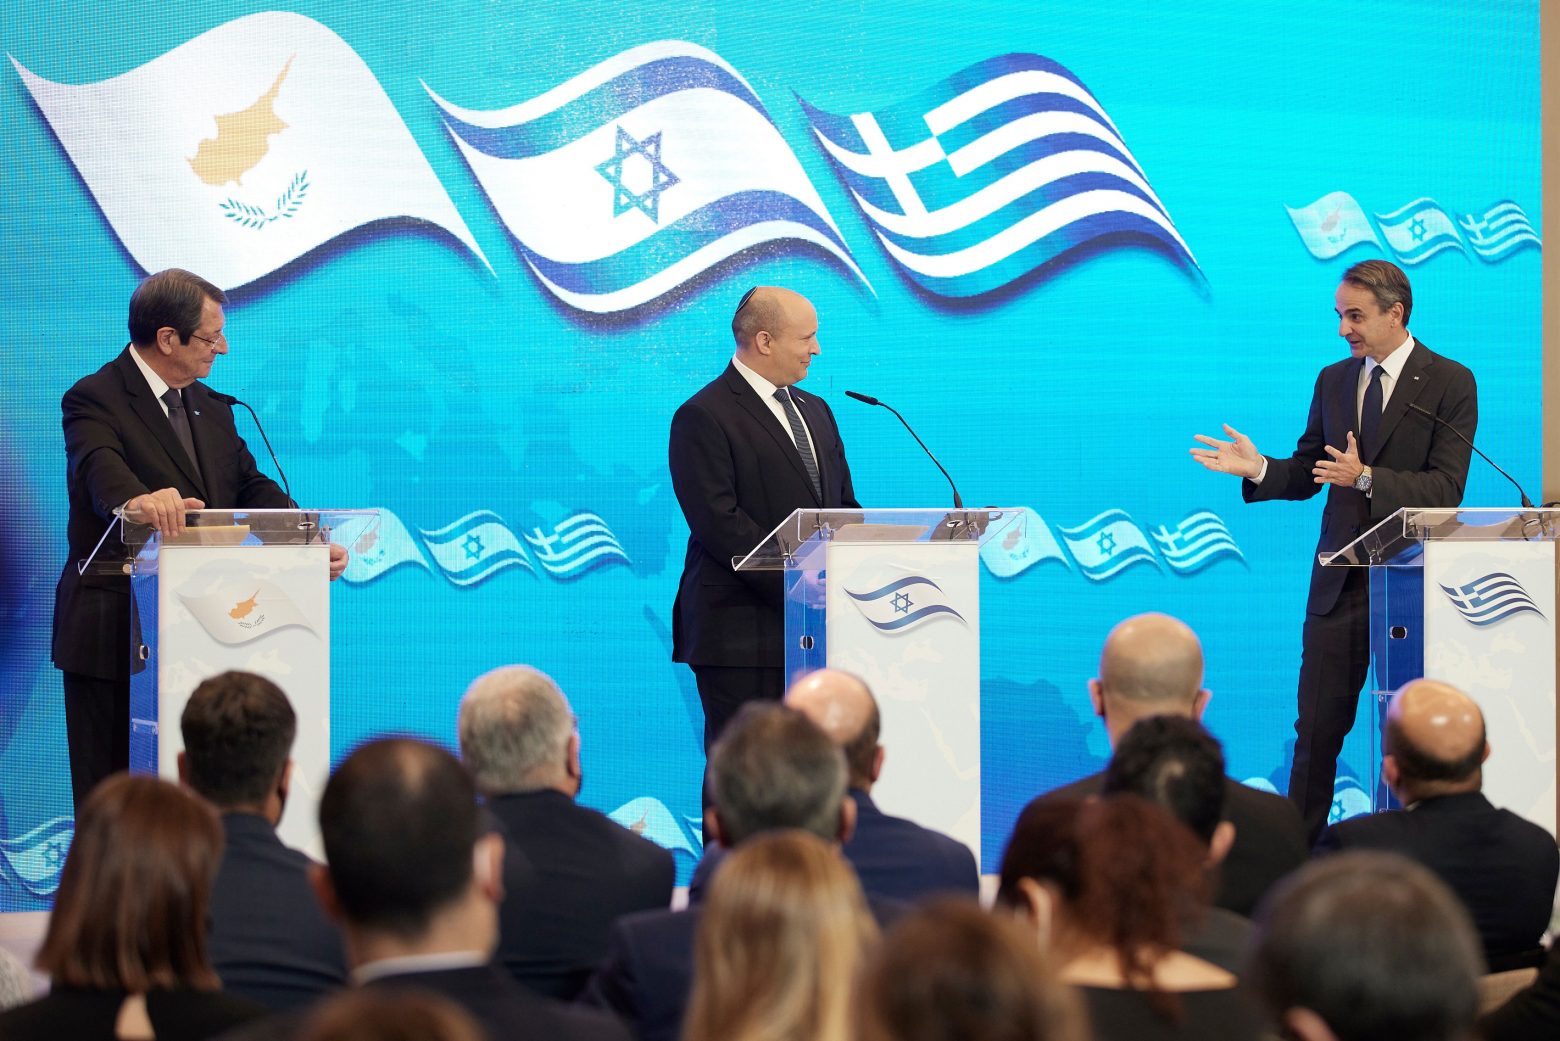 Κοινή Διακήρυξη της Τριμερούς Ελλάδας, Κύπρου και Ισραήλ - Ενισχύεται η αμυντική και στρατιωτική συνεργασία